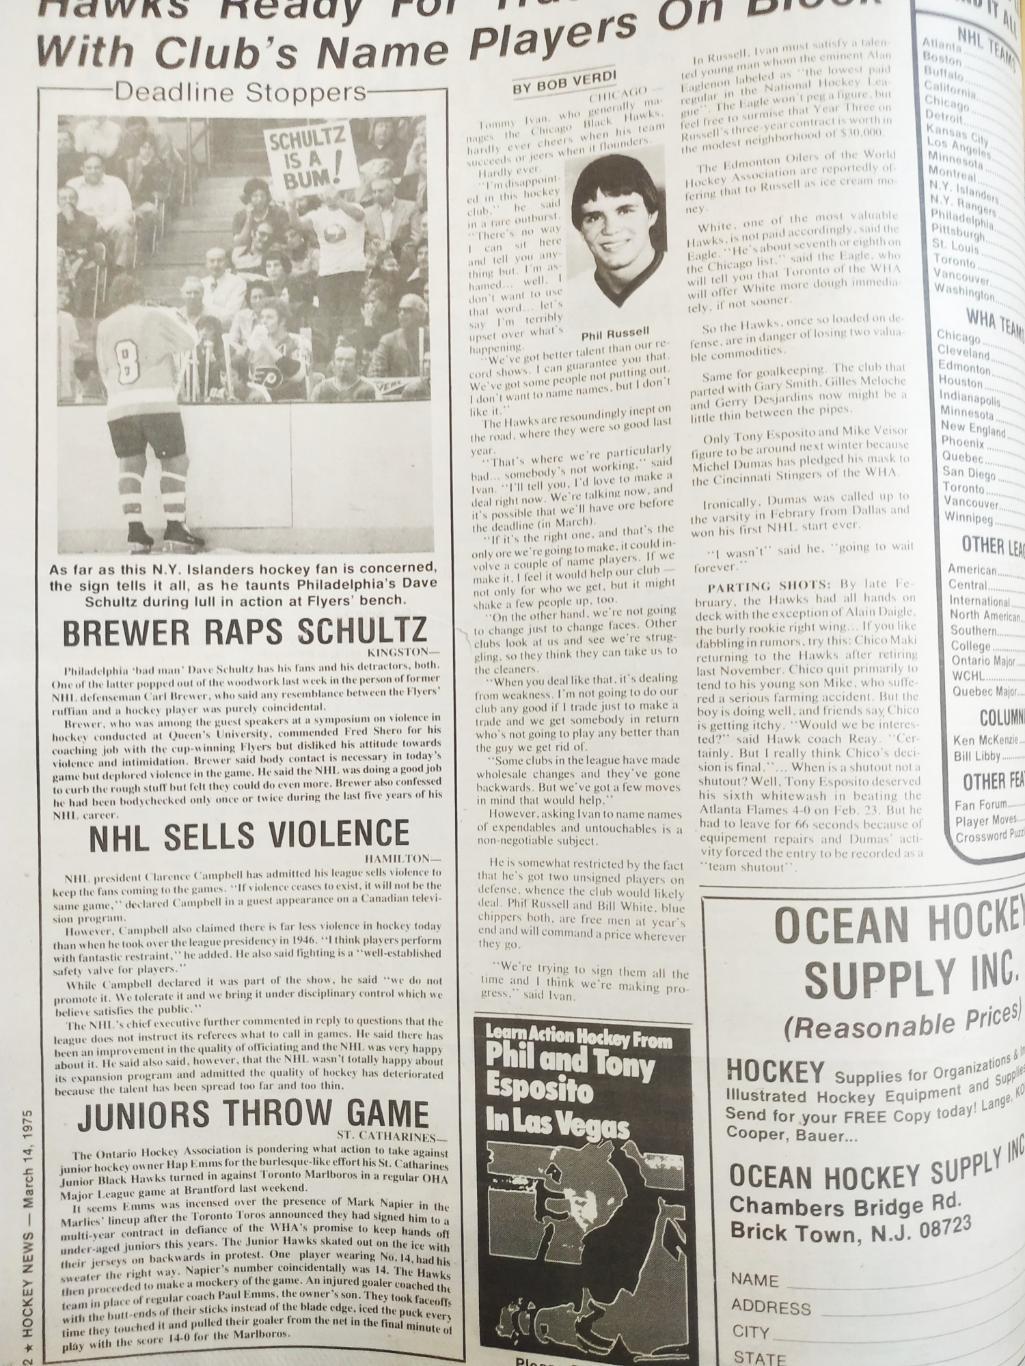 ХОККЕЙ ЖУРНАЛ ЕЖЕНЕДЕЛЬНИК НХЛ НОВОСТИ ХОККЕЯ MAR.14 1975 NHL THE HOCKEY NEWS 1